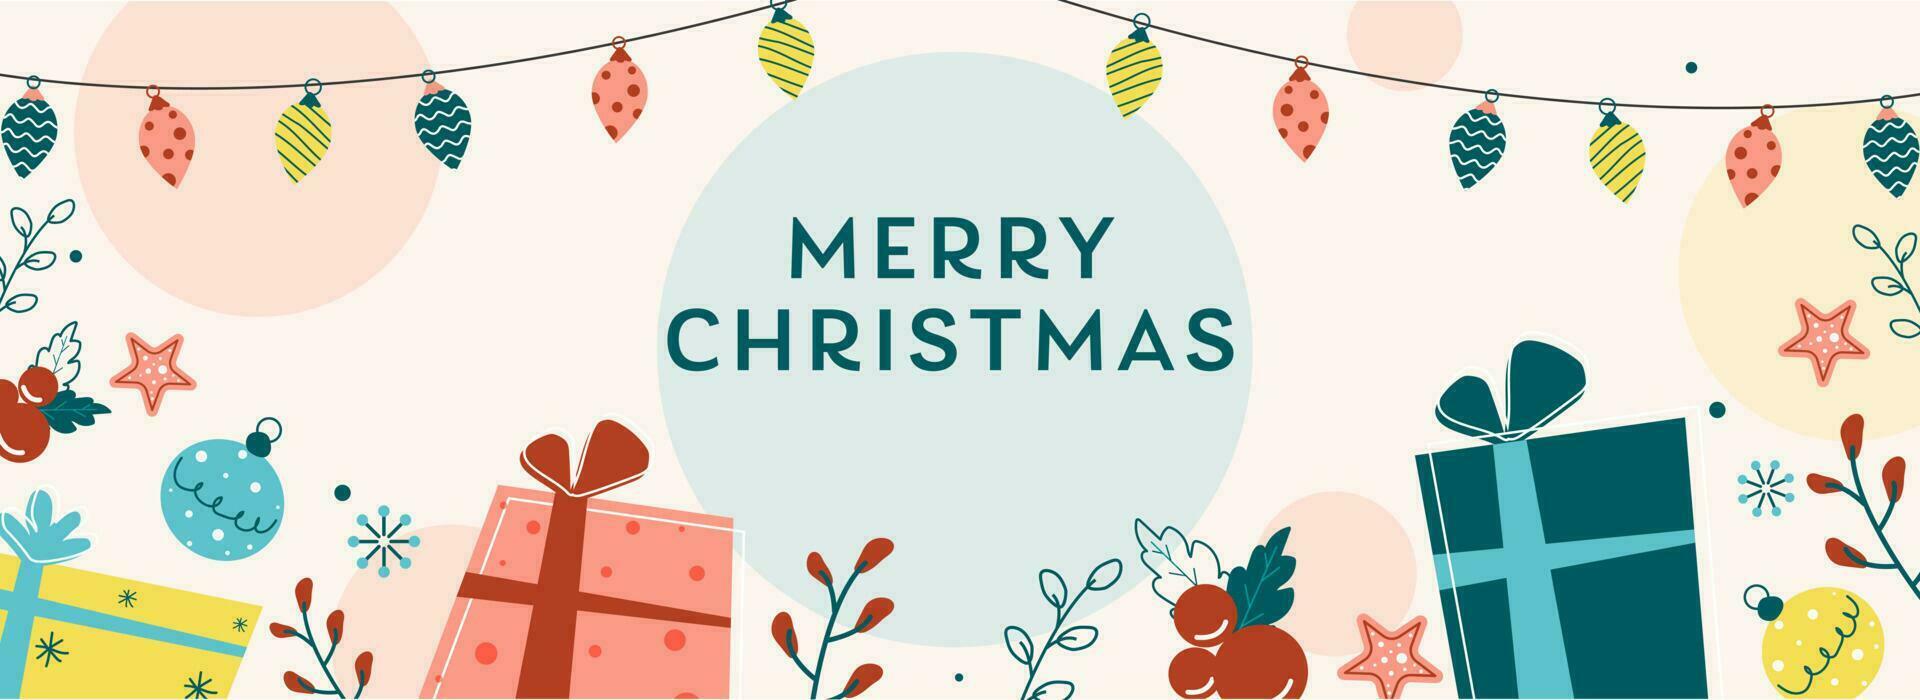 vecteur illustration de cadeau des boites avec houx baies, étoiles, babioles et éclairage guirlande décoré Contexte pour joyeux Noël.